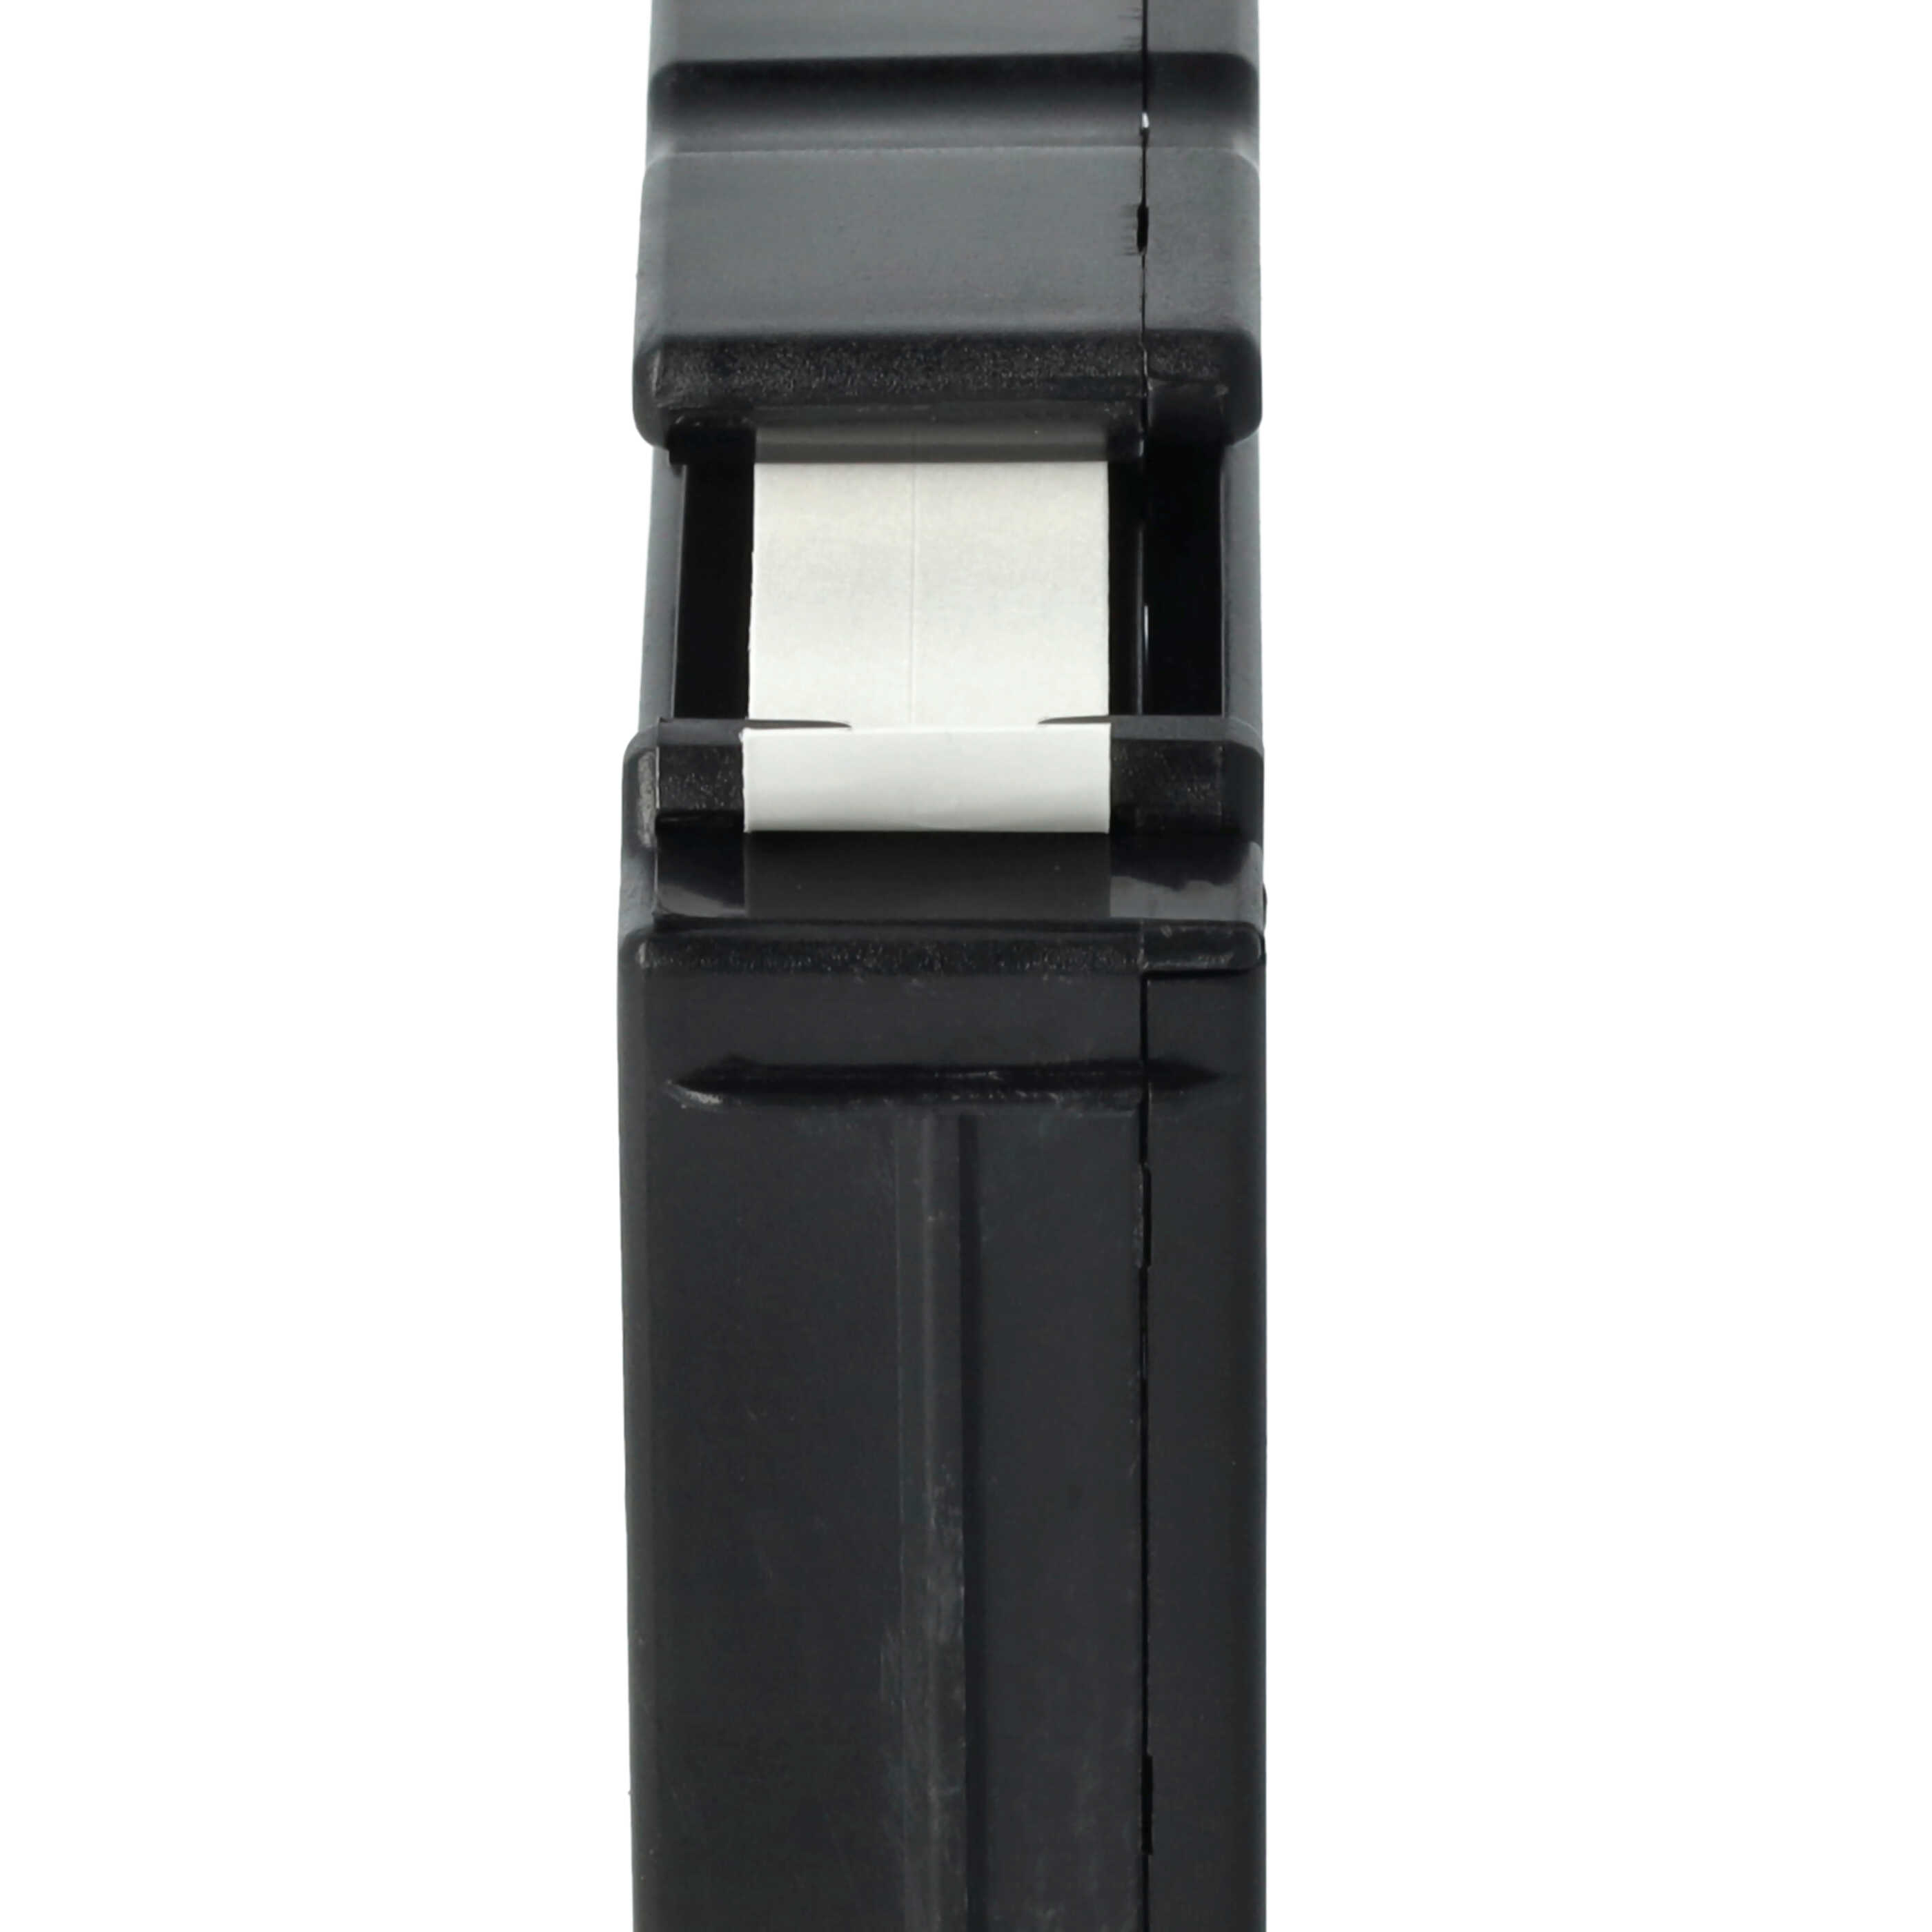 Cassetta nastro sostituisce Brother M-K221 per etichettatrice Brother 9mm nero su bianco